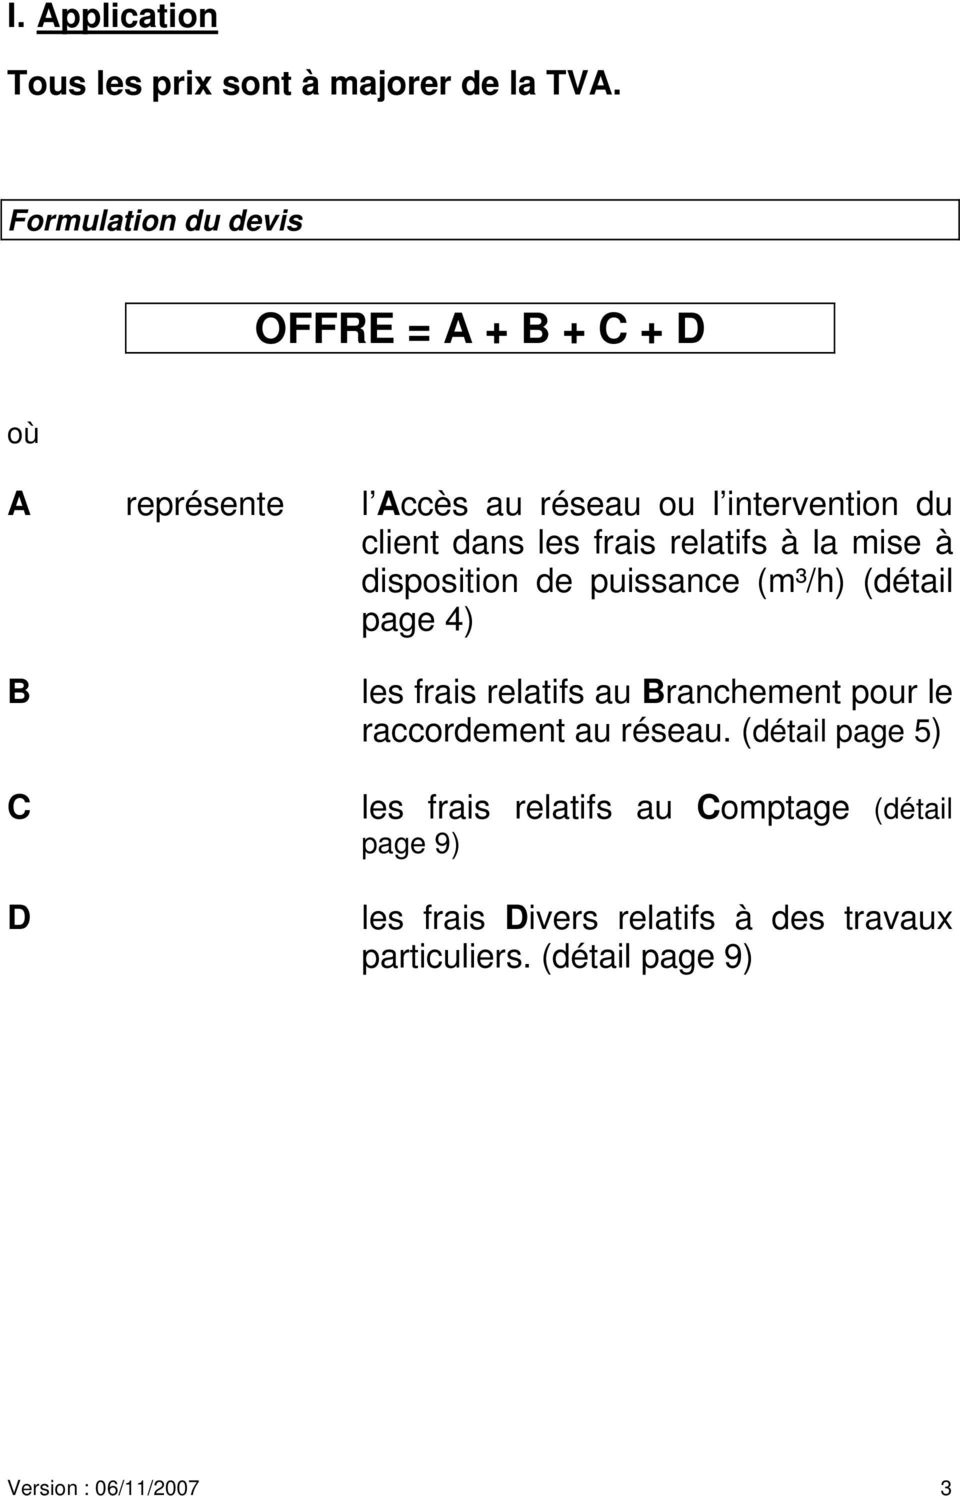 frais relatifs à la mise à disposition de puissance (m³/h) (détail page 4) B C D les frais relatifs au Branchement